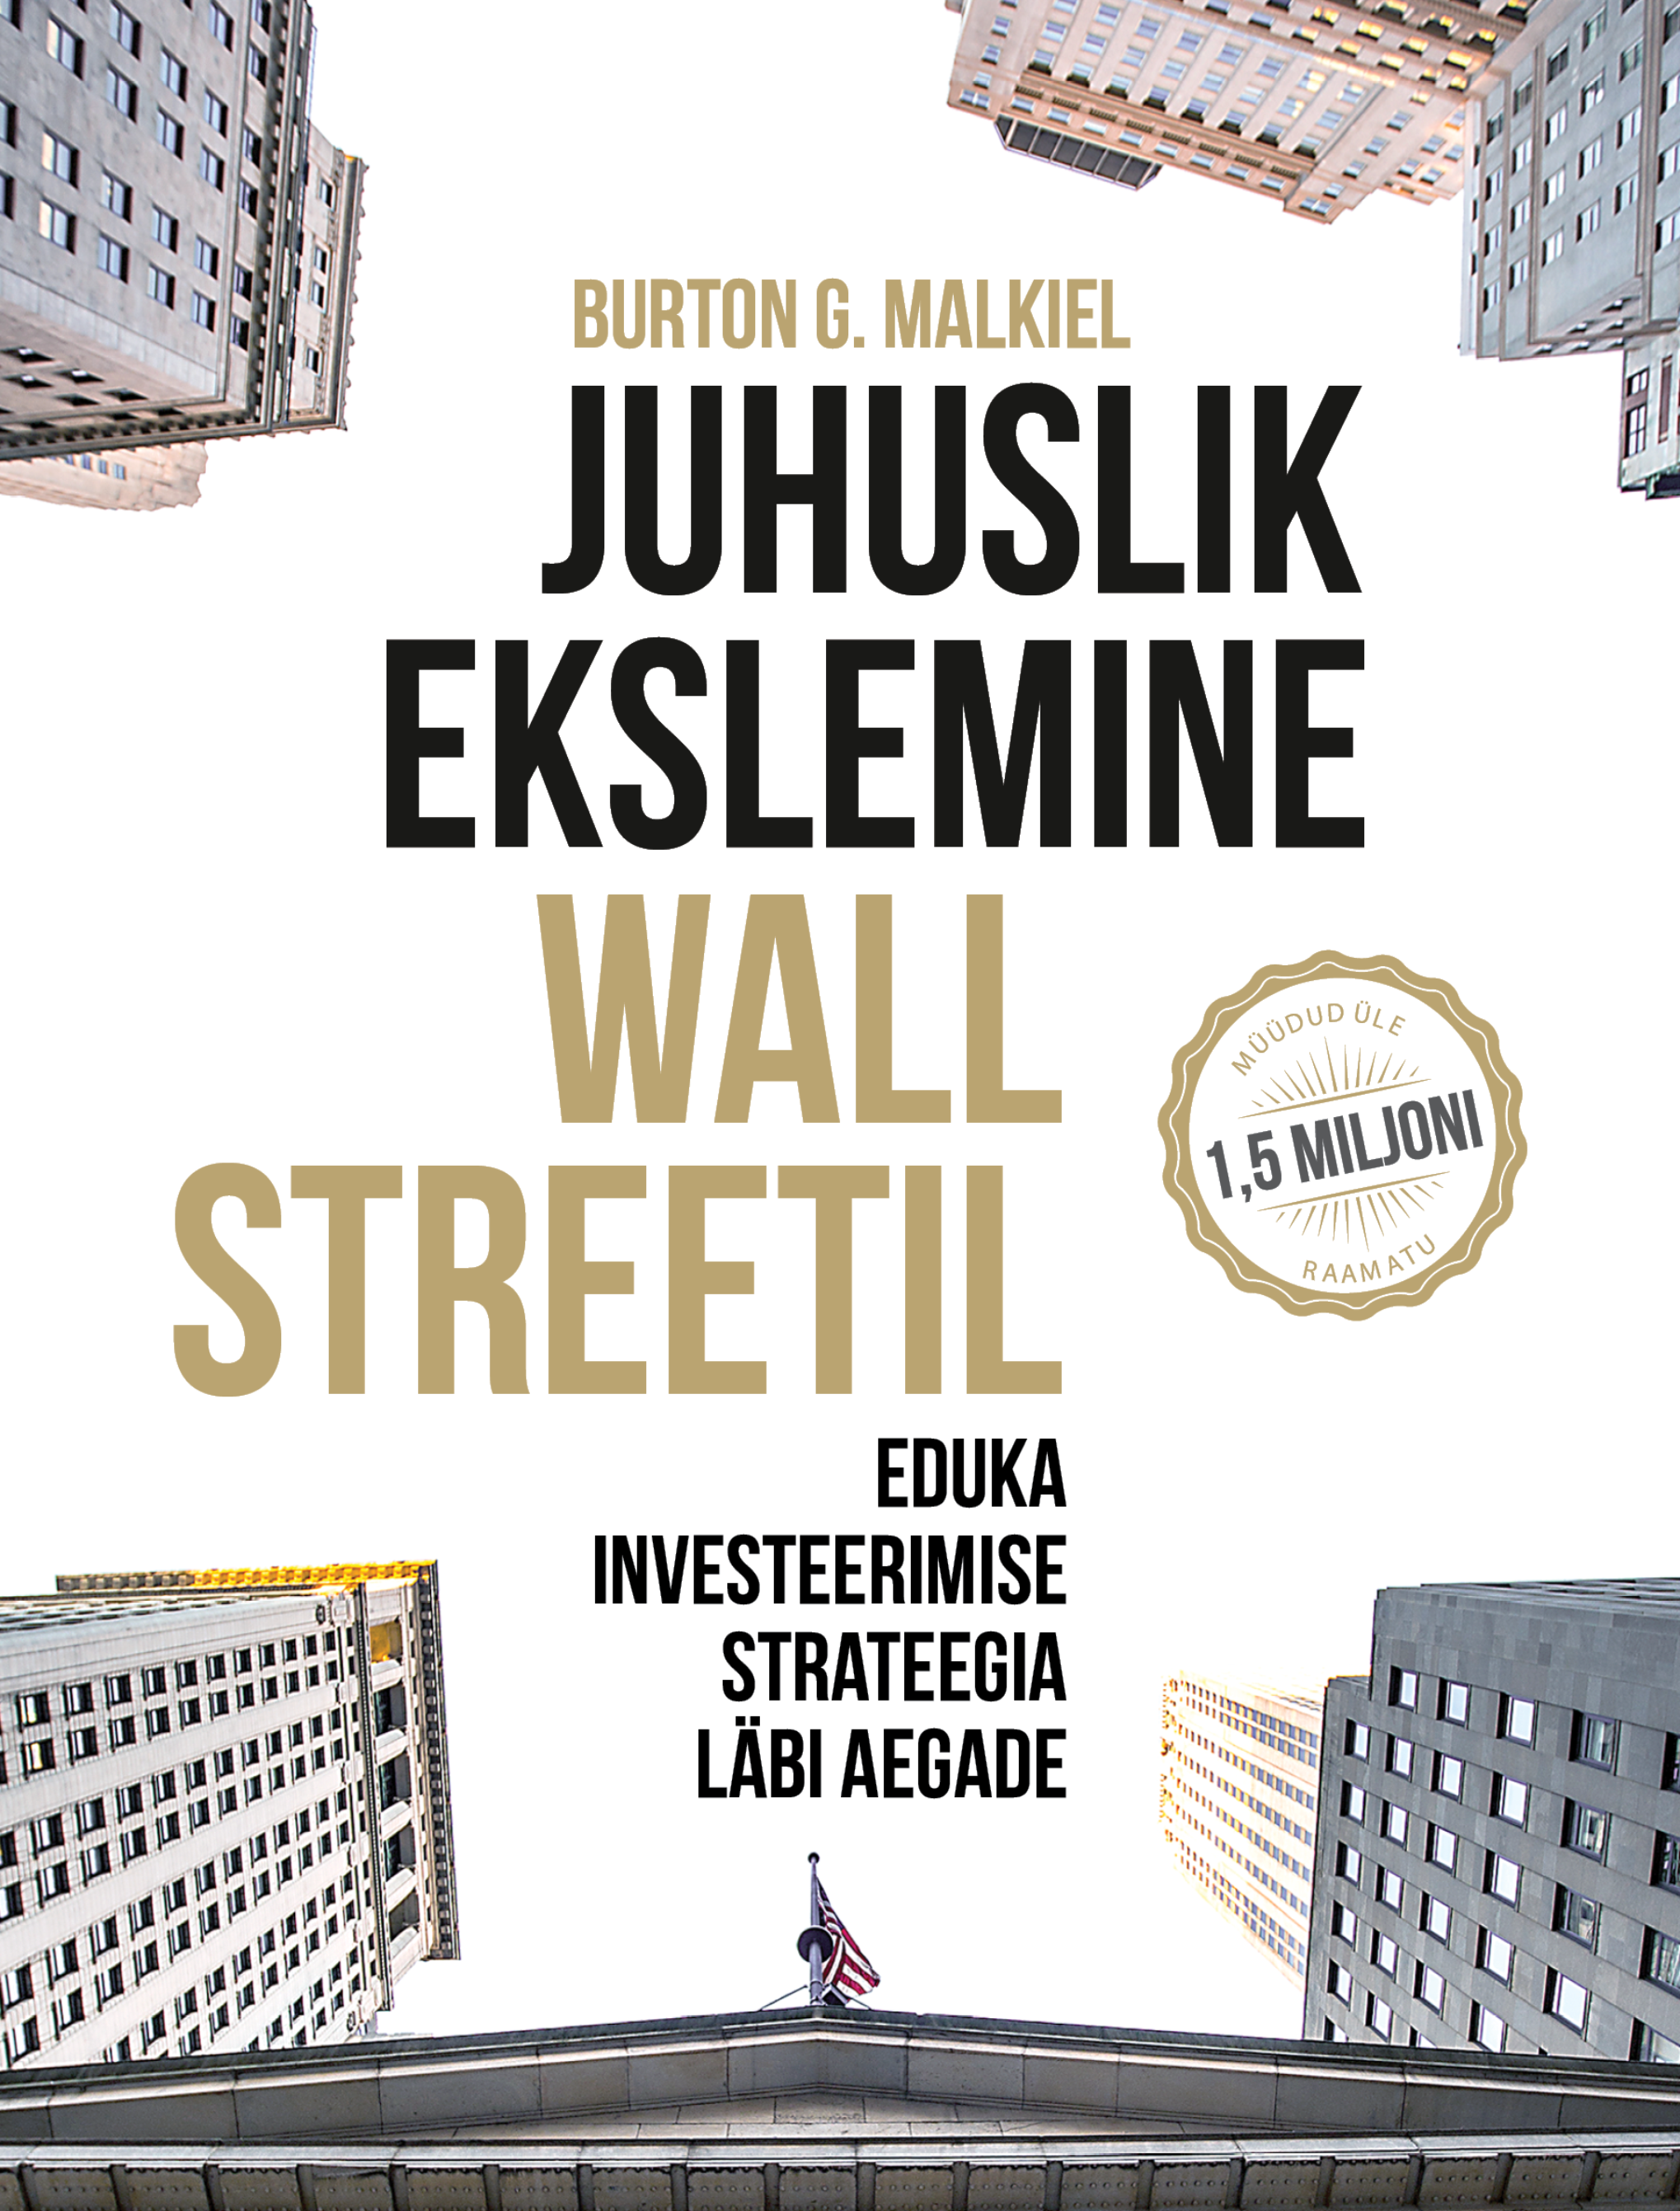 Книга Juhuslik ekslemine Wall Streetil из серии , созданная Burton G. Malkiel, может относится к жанру Экономика. Стоимость электронной книги Juhuslik ekslemine Wall Streetil с идентификатором 48778607 составляет 2172.21 руб.